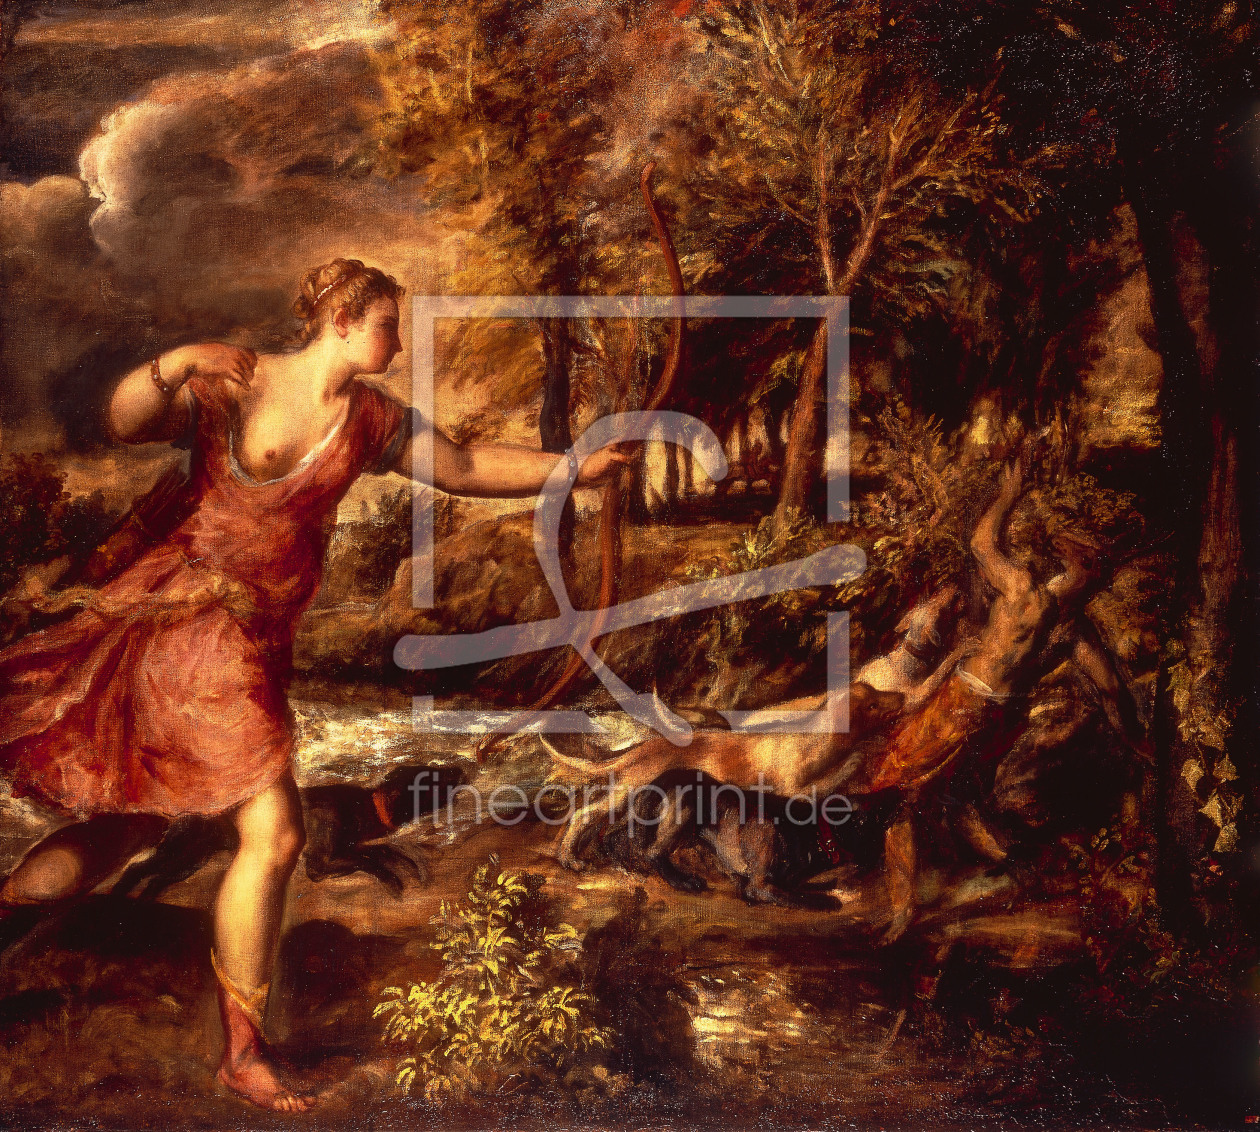 Bild-Nr.: 30007497 Titian / The Death of Actaeon / 1559 erstellt von Vecellio, Tiziano